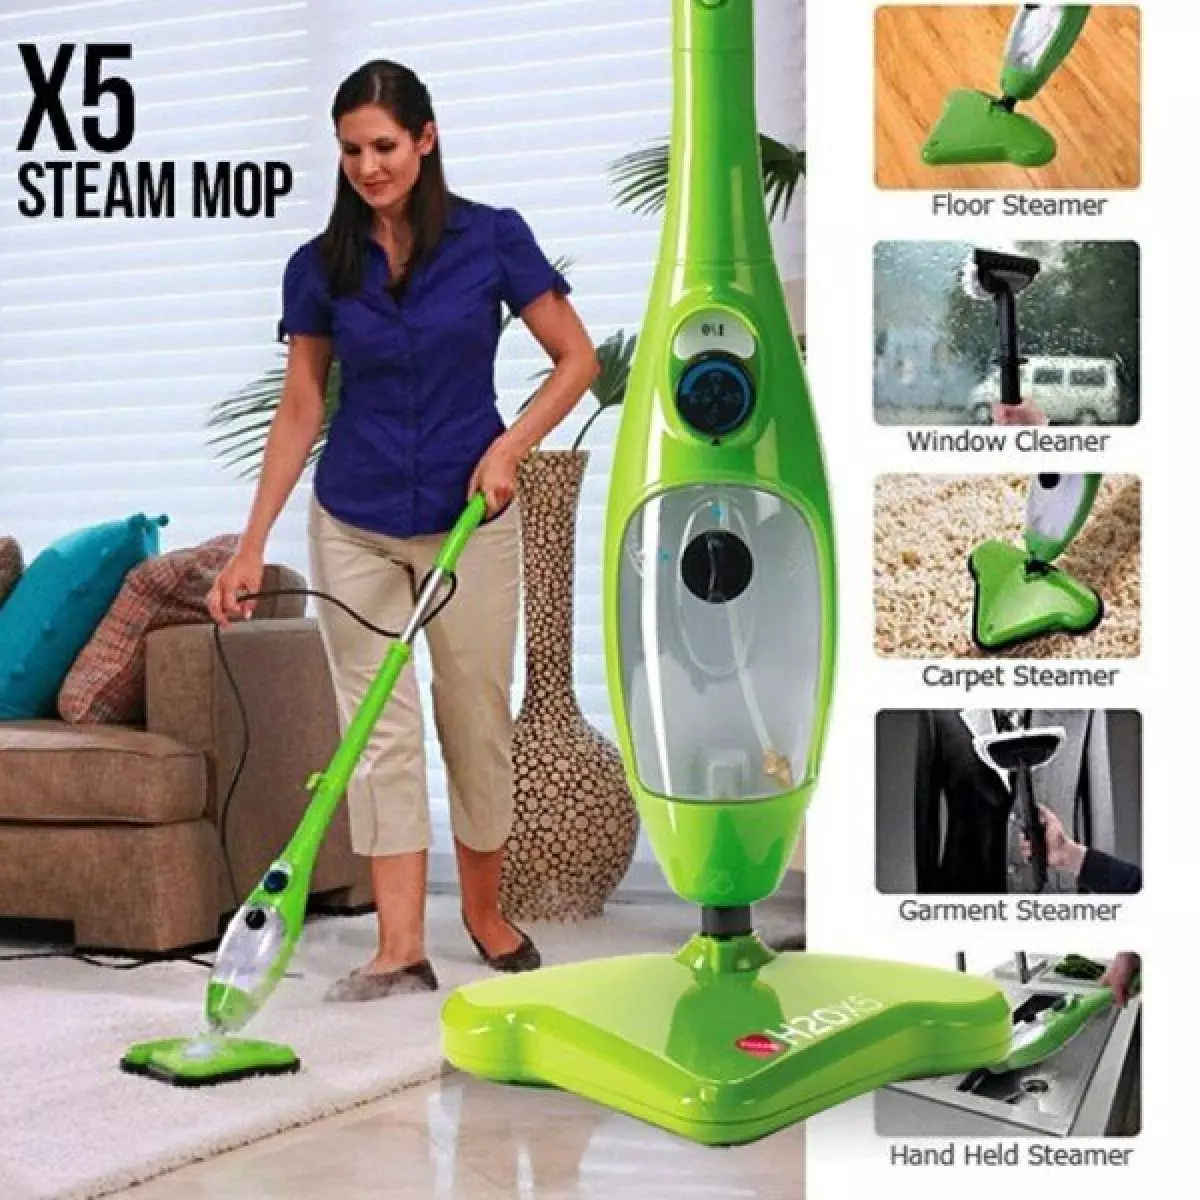 Steam clean mop x5 фото 59